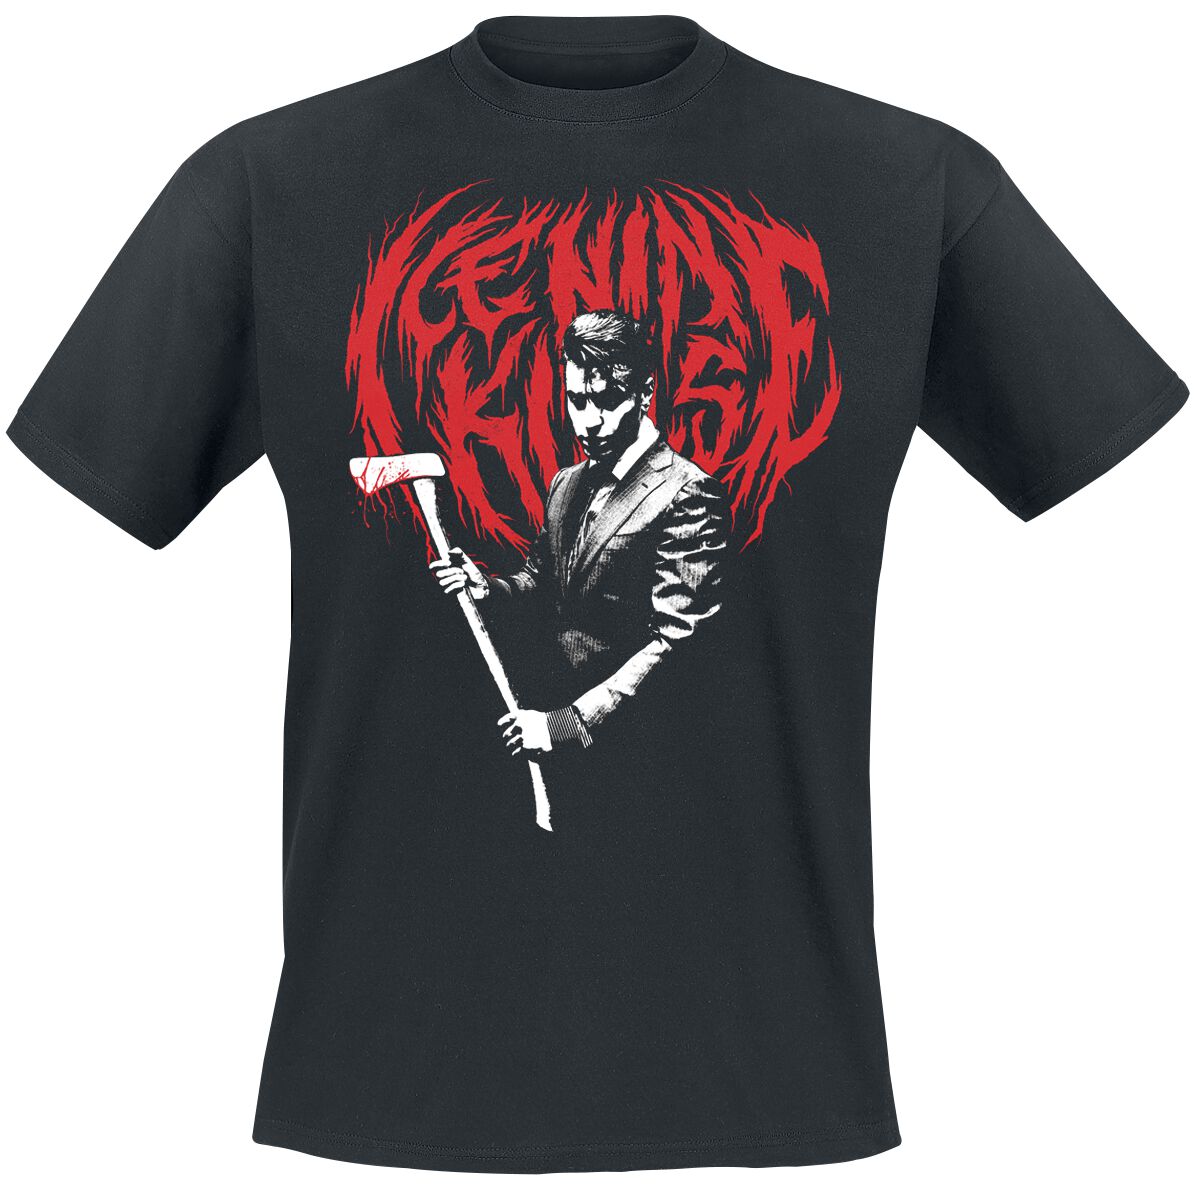 Ice Nine Kills T-Shirt - Hey Paul - S bis 4XL - für Männer - Größe M - schwarz  - Lizenziertes Merchandise!